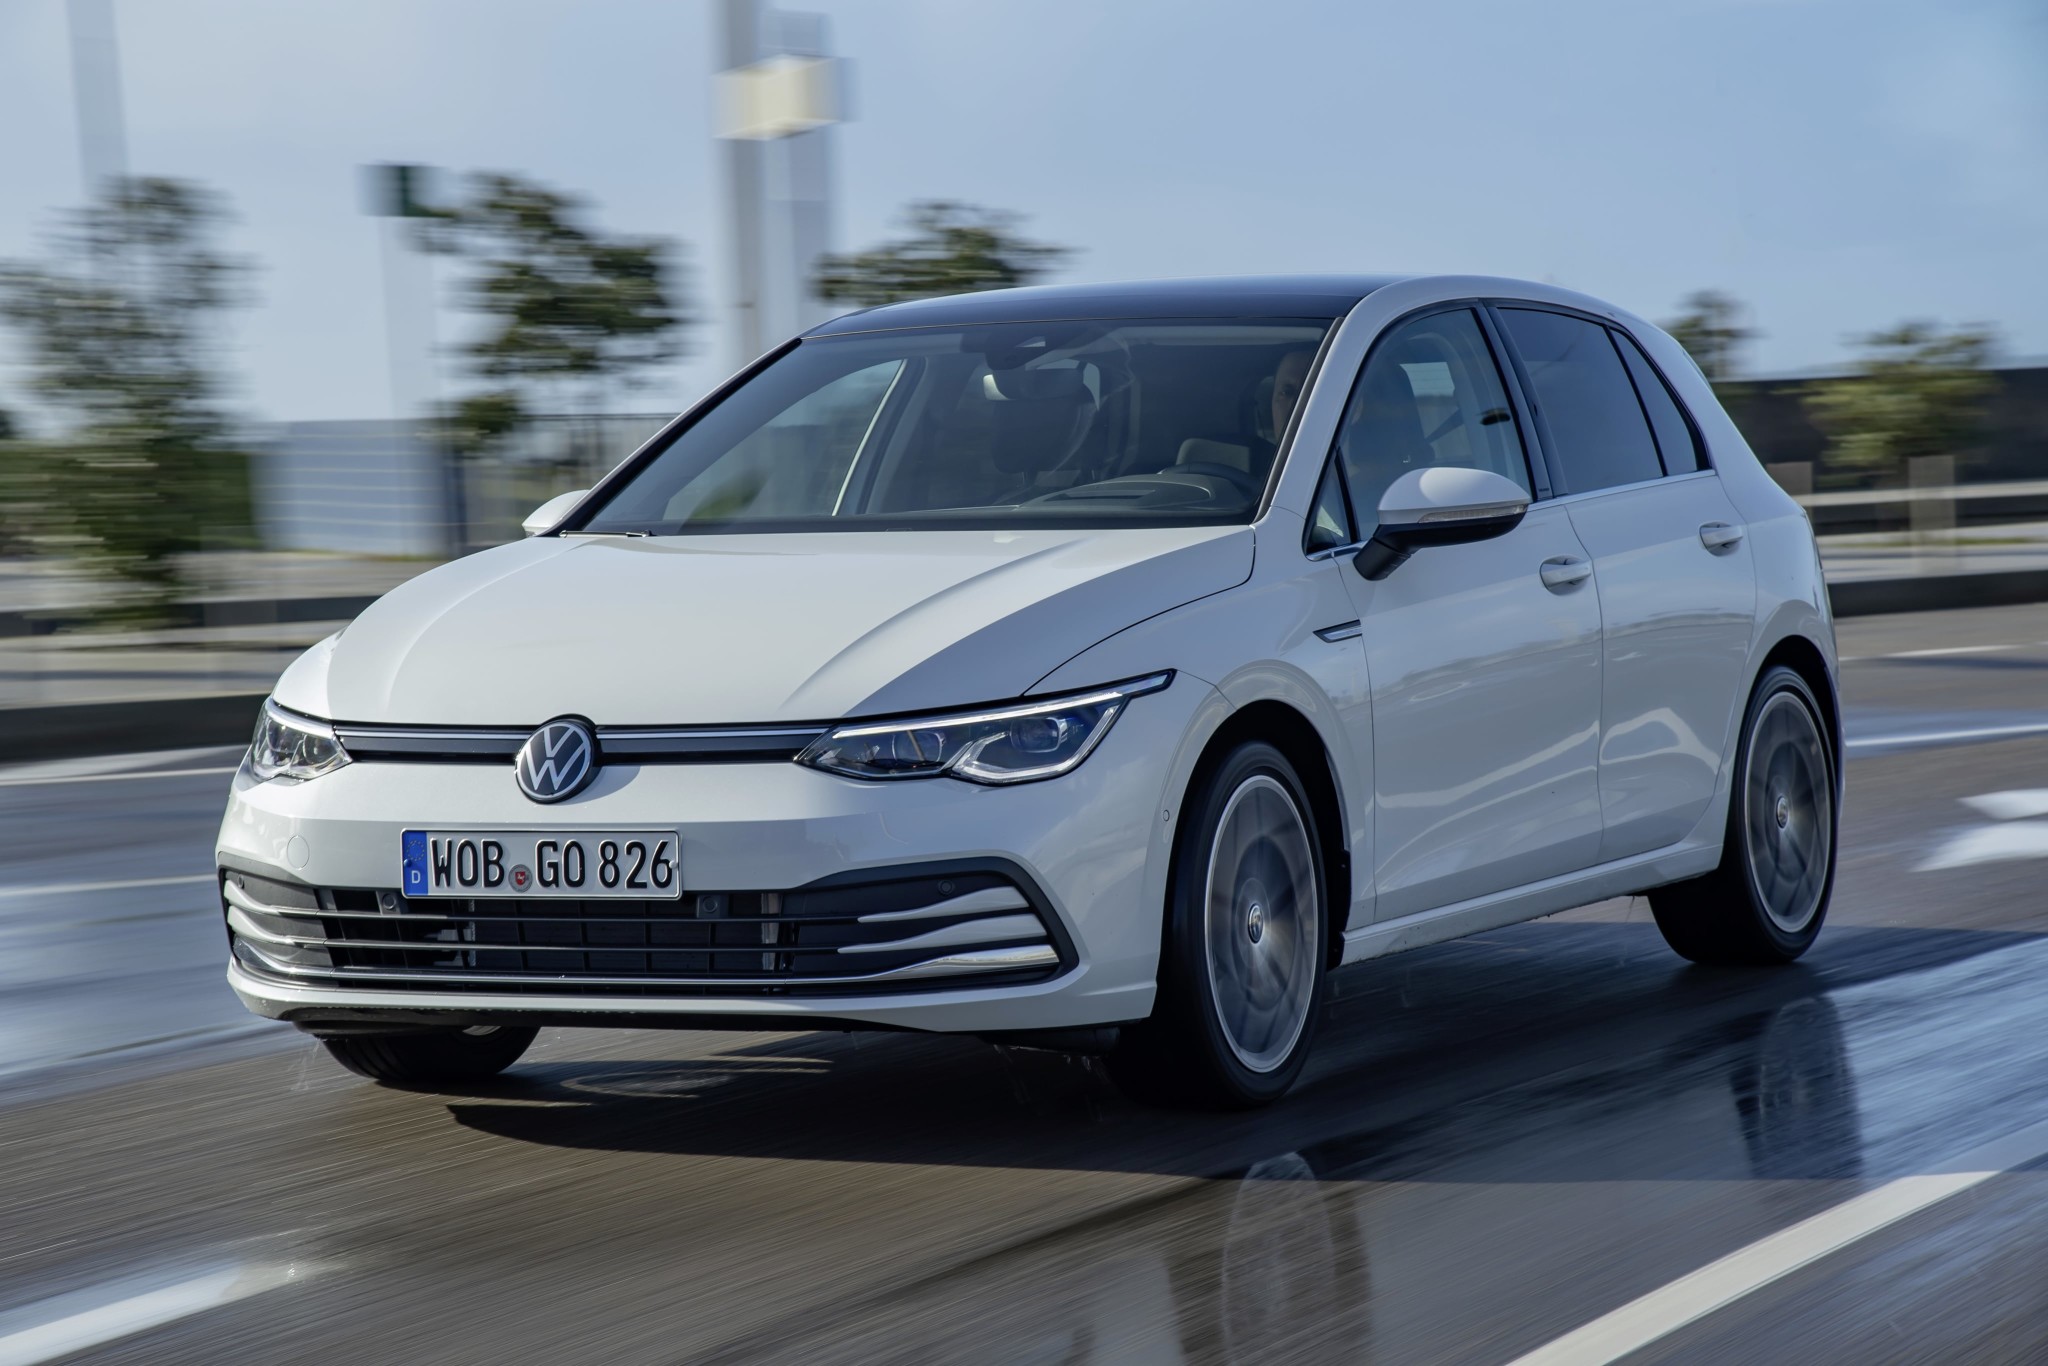 Volkswagen Golf 2020: Precio, ficha técnica, fotos y vídeo - Carhaus